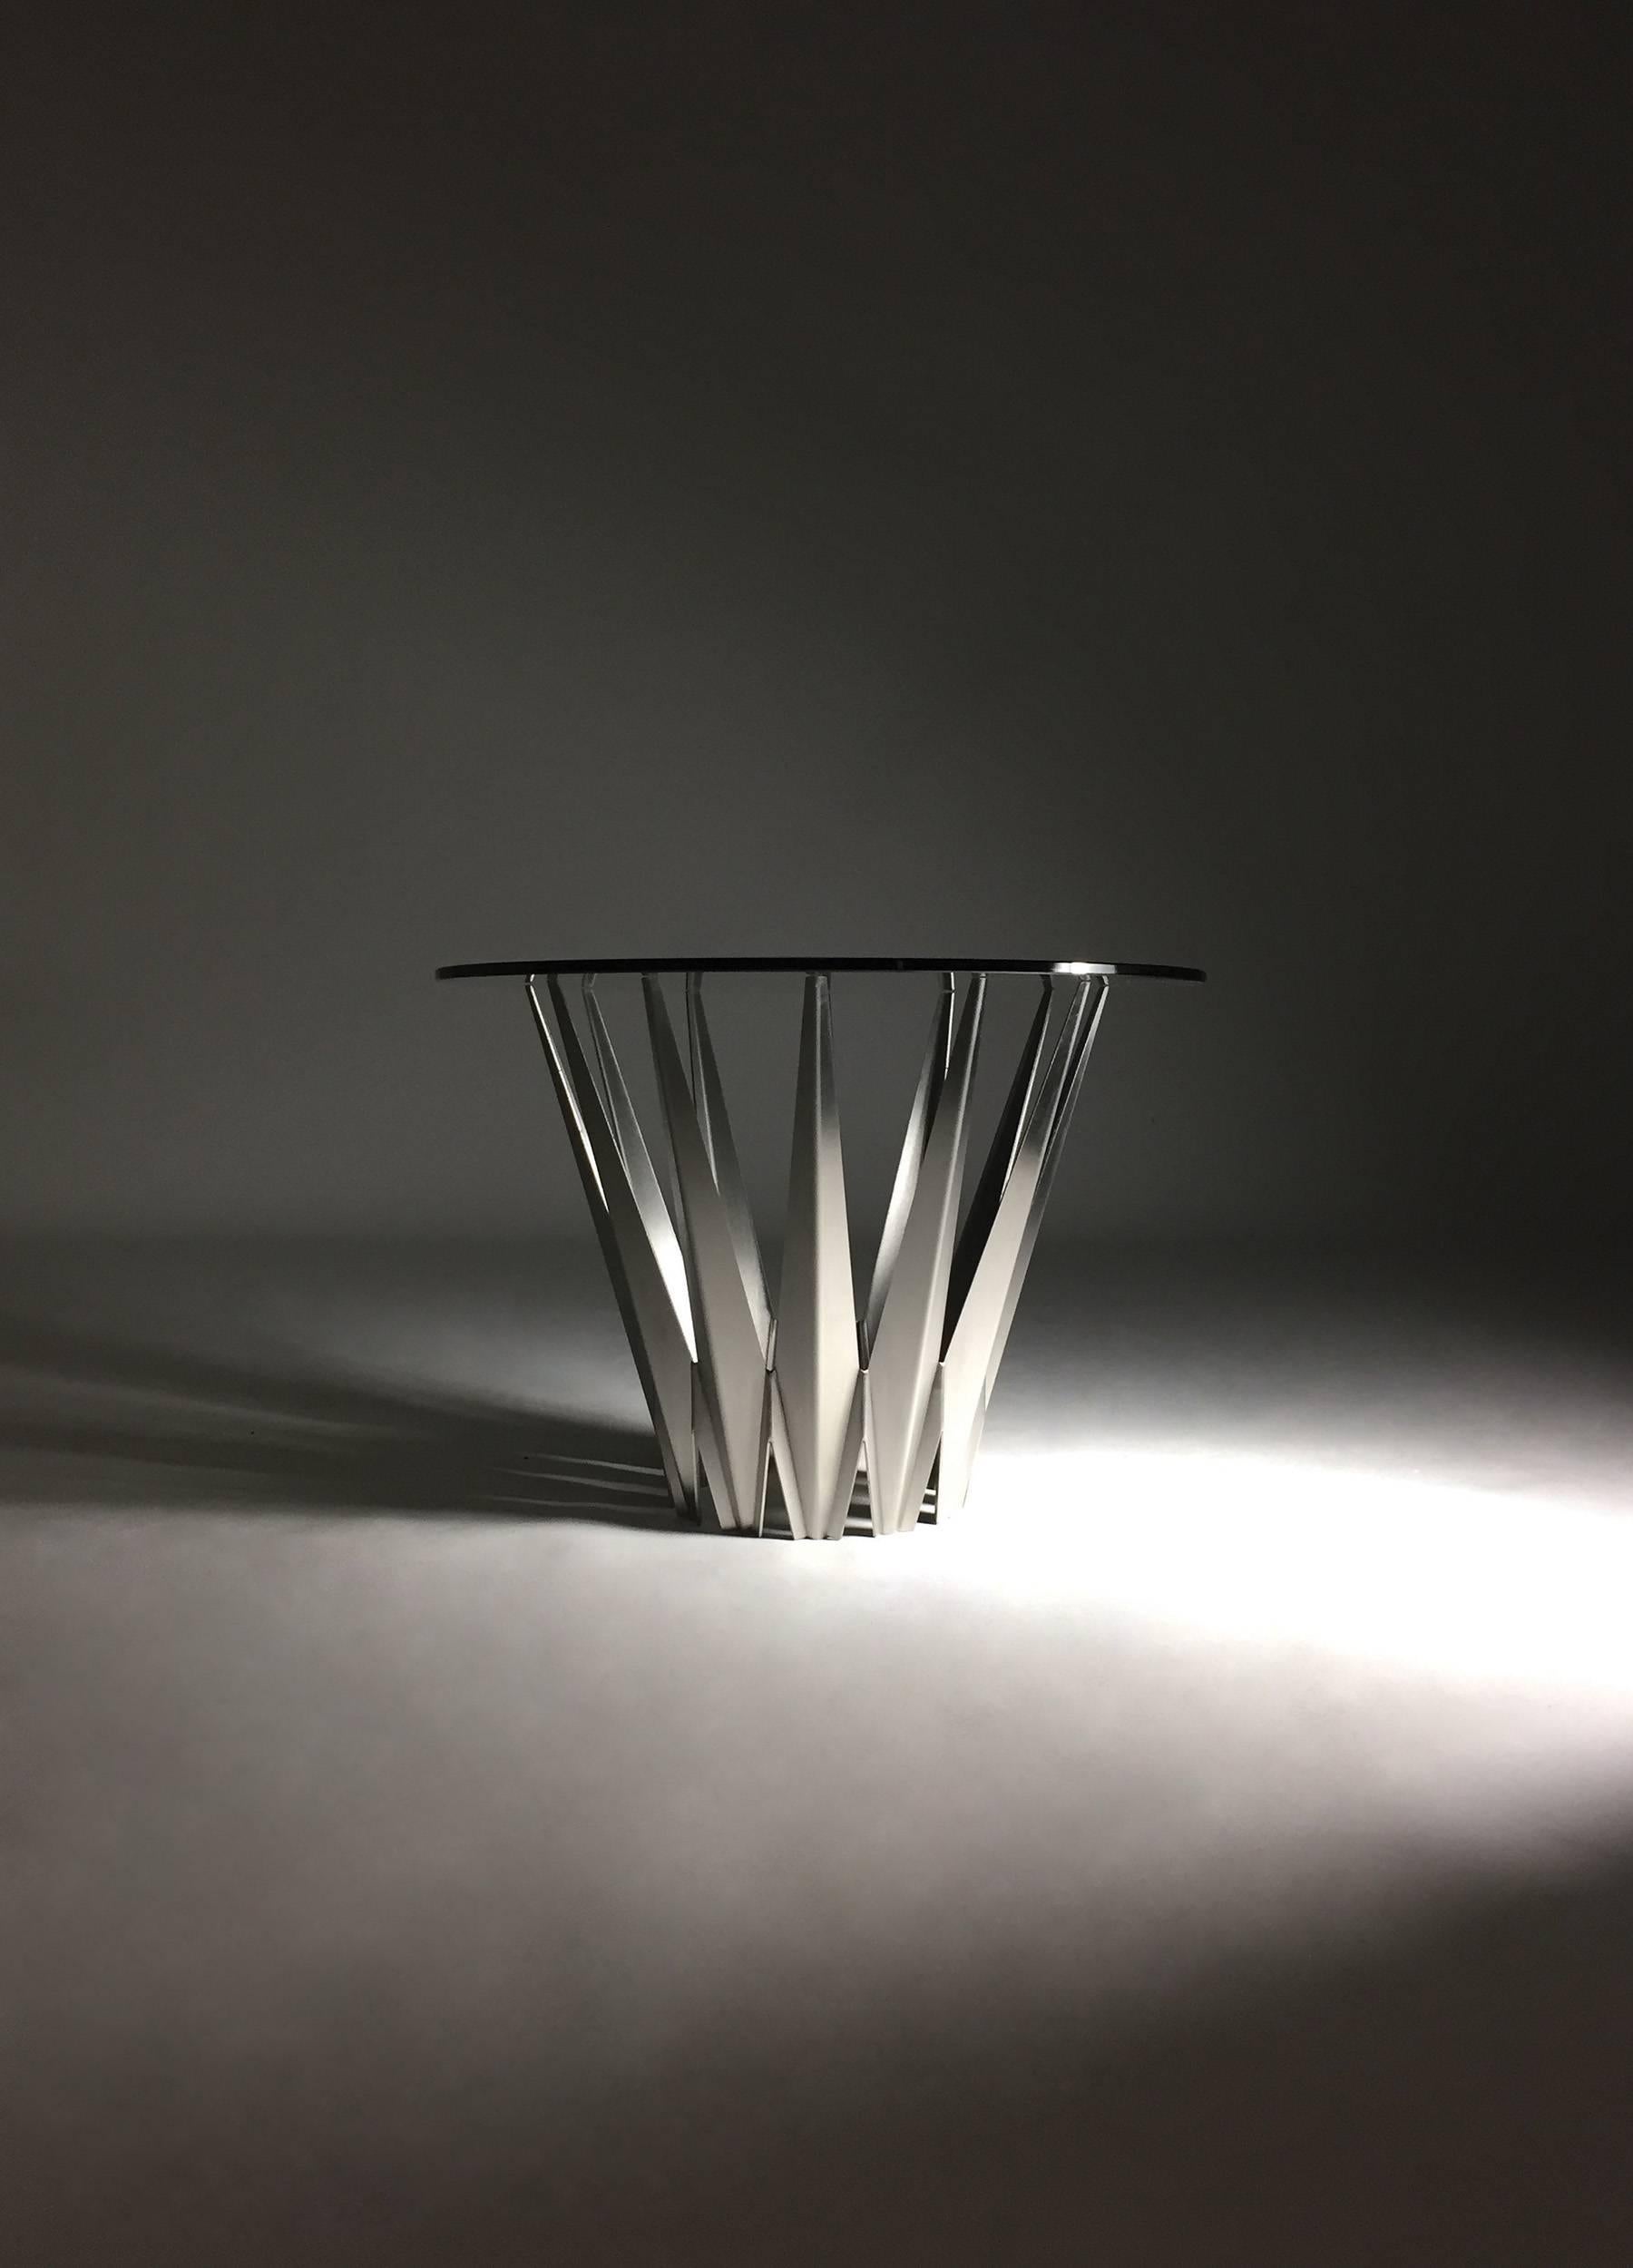 Pair of Custom Stainless Steel Krystalline Side Tables / Made to Order 3